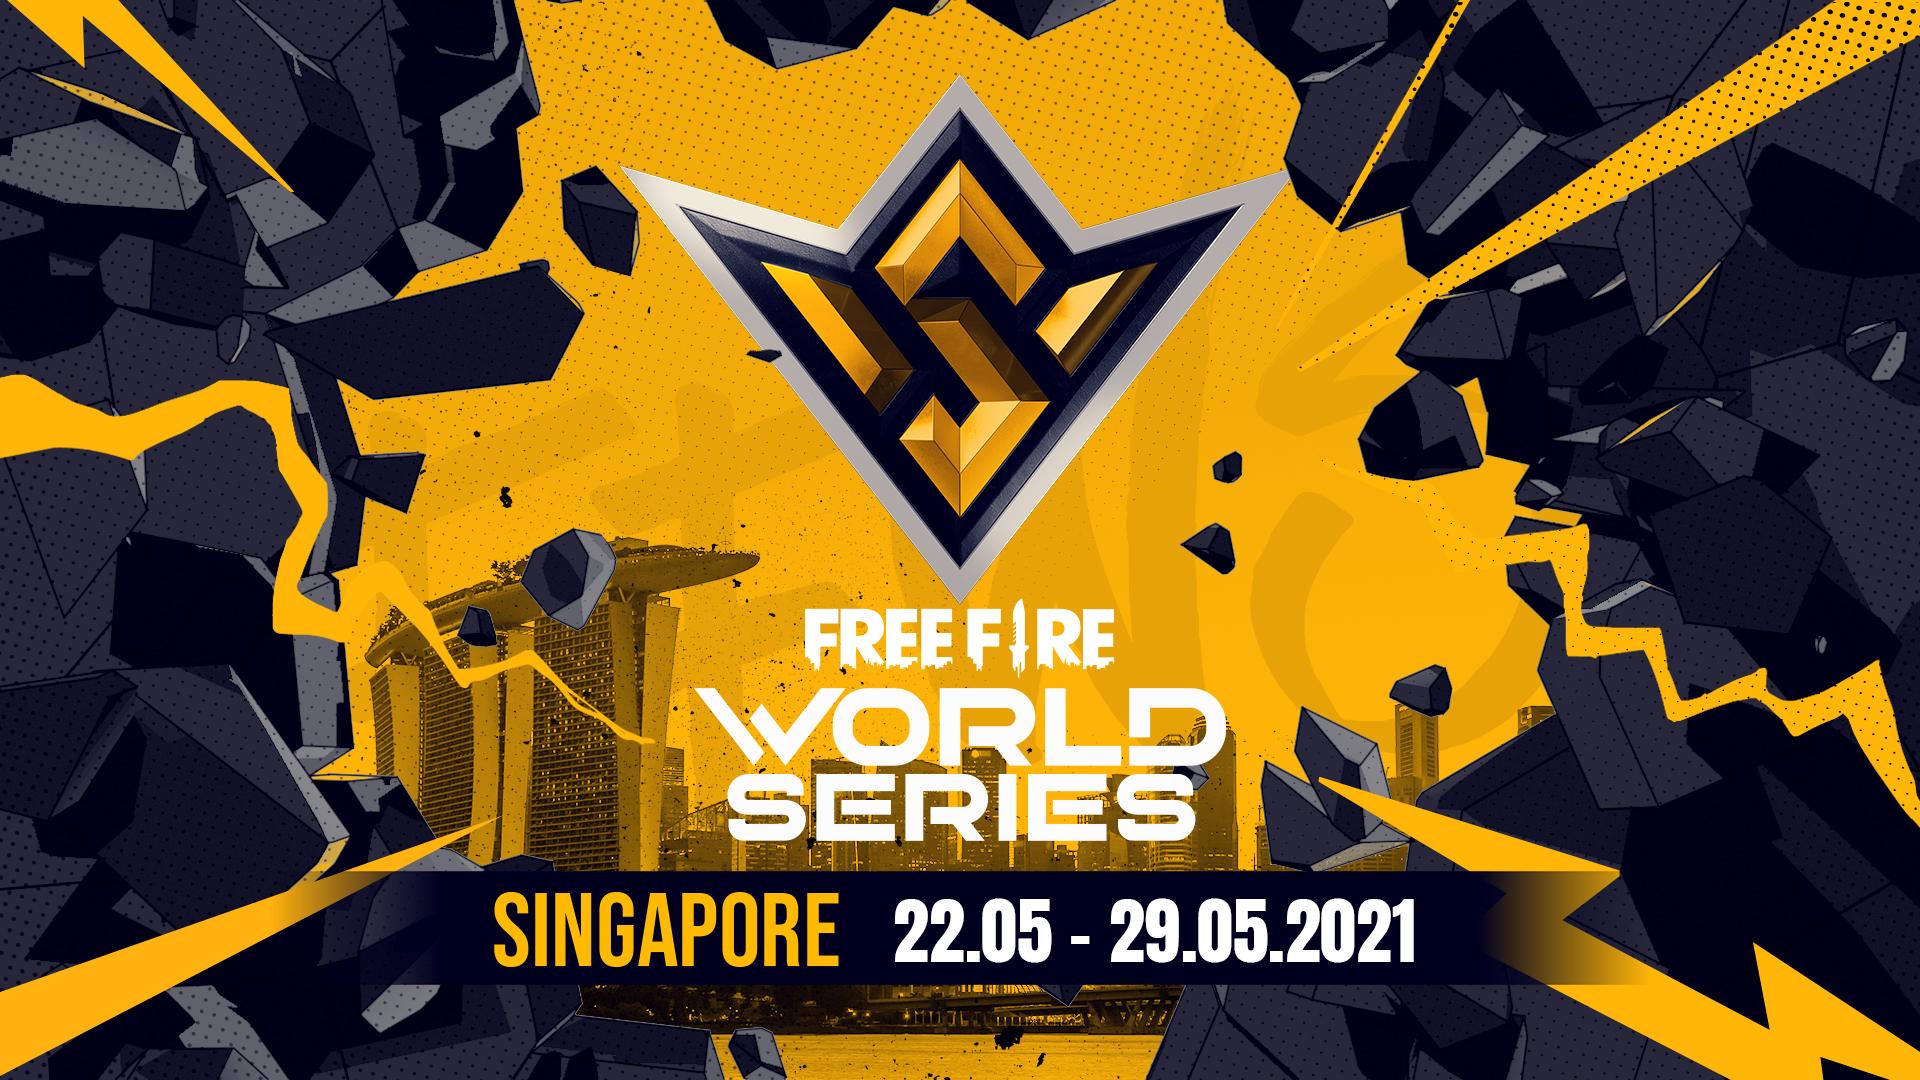 Garena công bố giải Free Fire World Series 2021 Singapore với tổng giải thưởng lên tới 2 triệu USD - Ảnh 1.